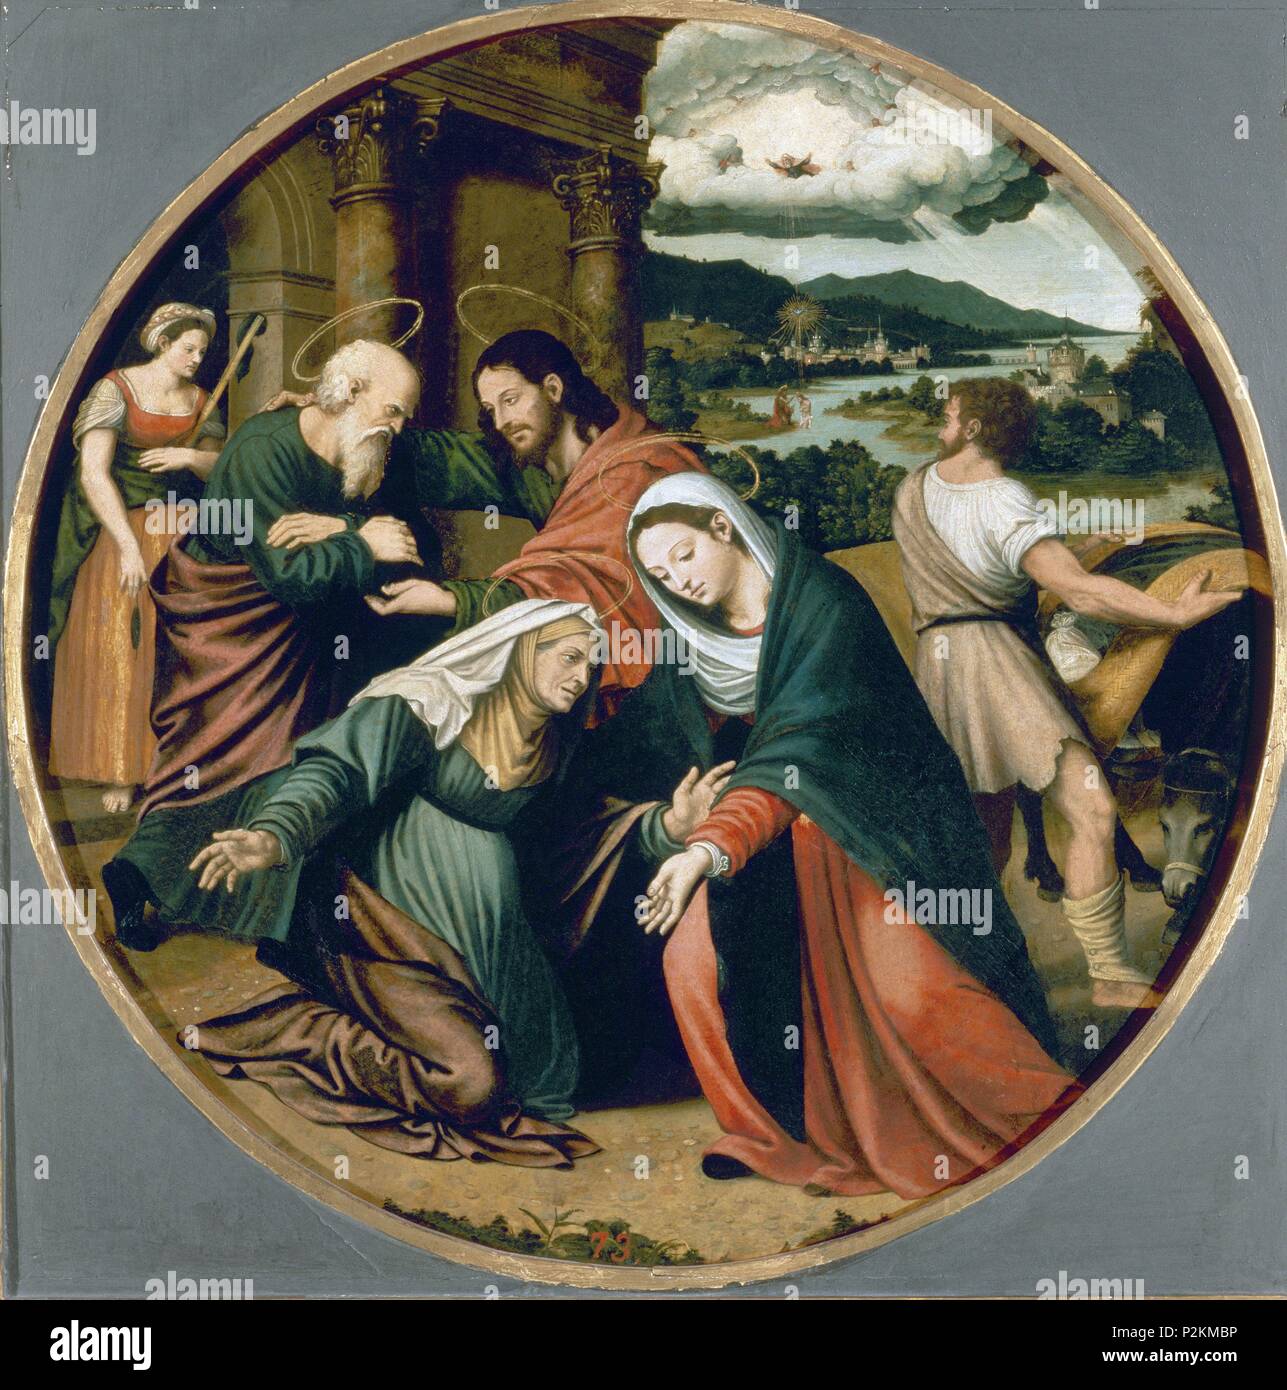 Spanish school. The Visitation . La Visitación. Oil on panel (60 cm diametre). Madrid, El Prado. Author: Vicente Macip (1475-1545). Location: MUSEO DEL PRADO-PINTURA, MADRID, SPAIN. Stock Photo